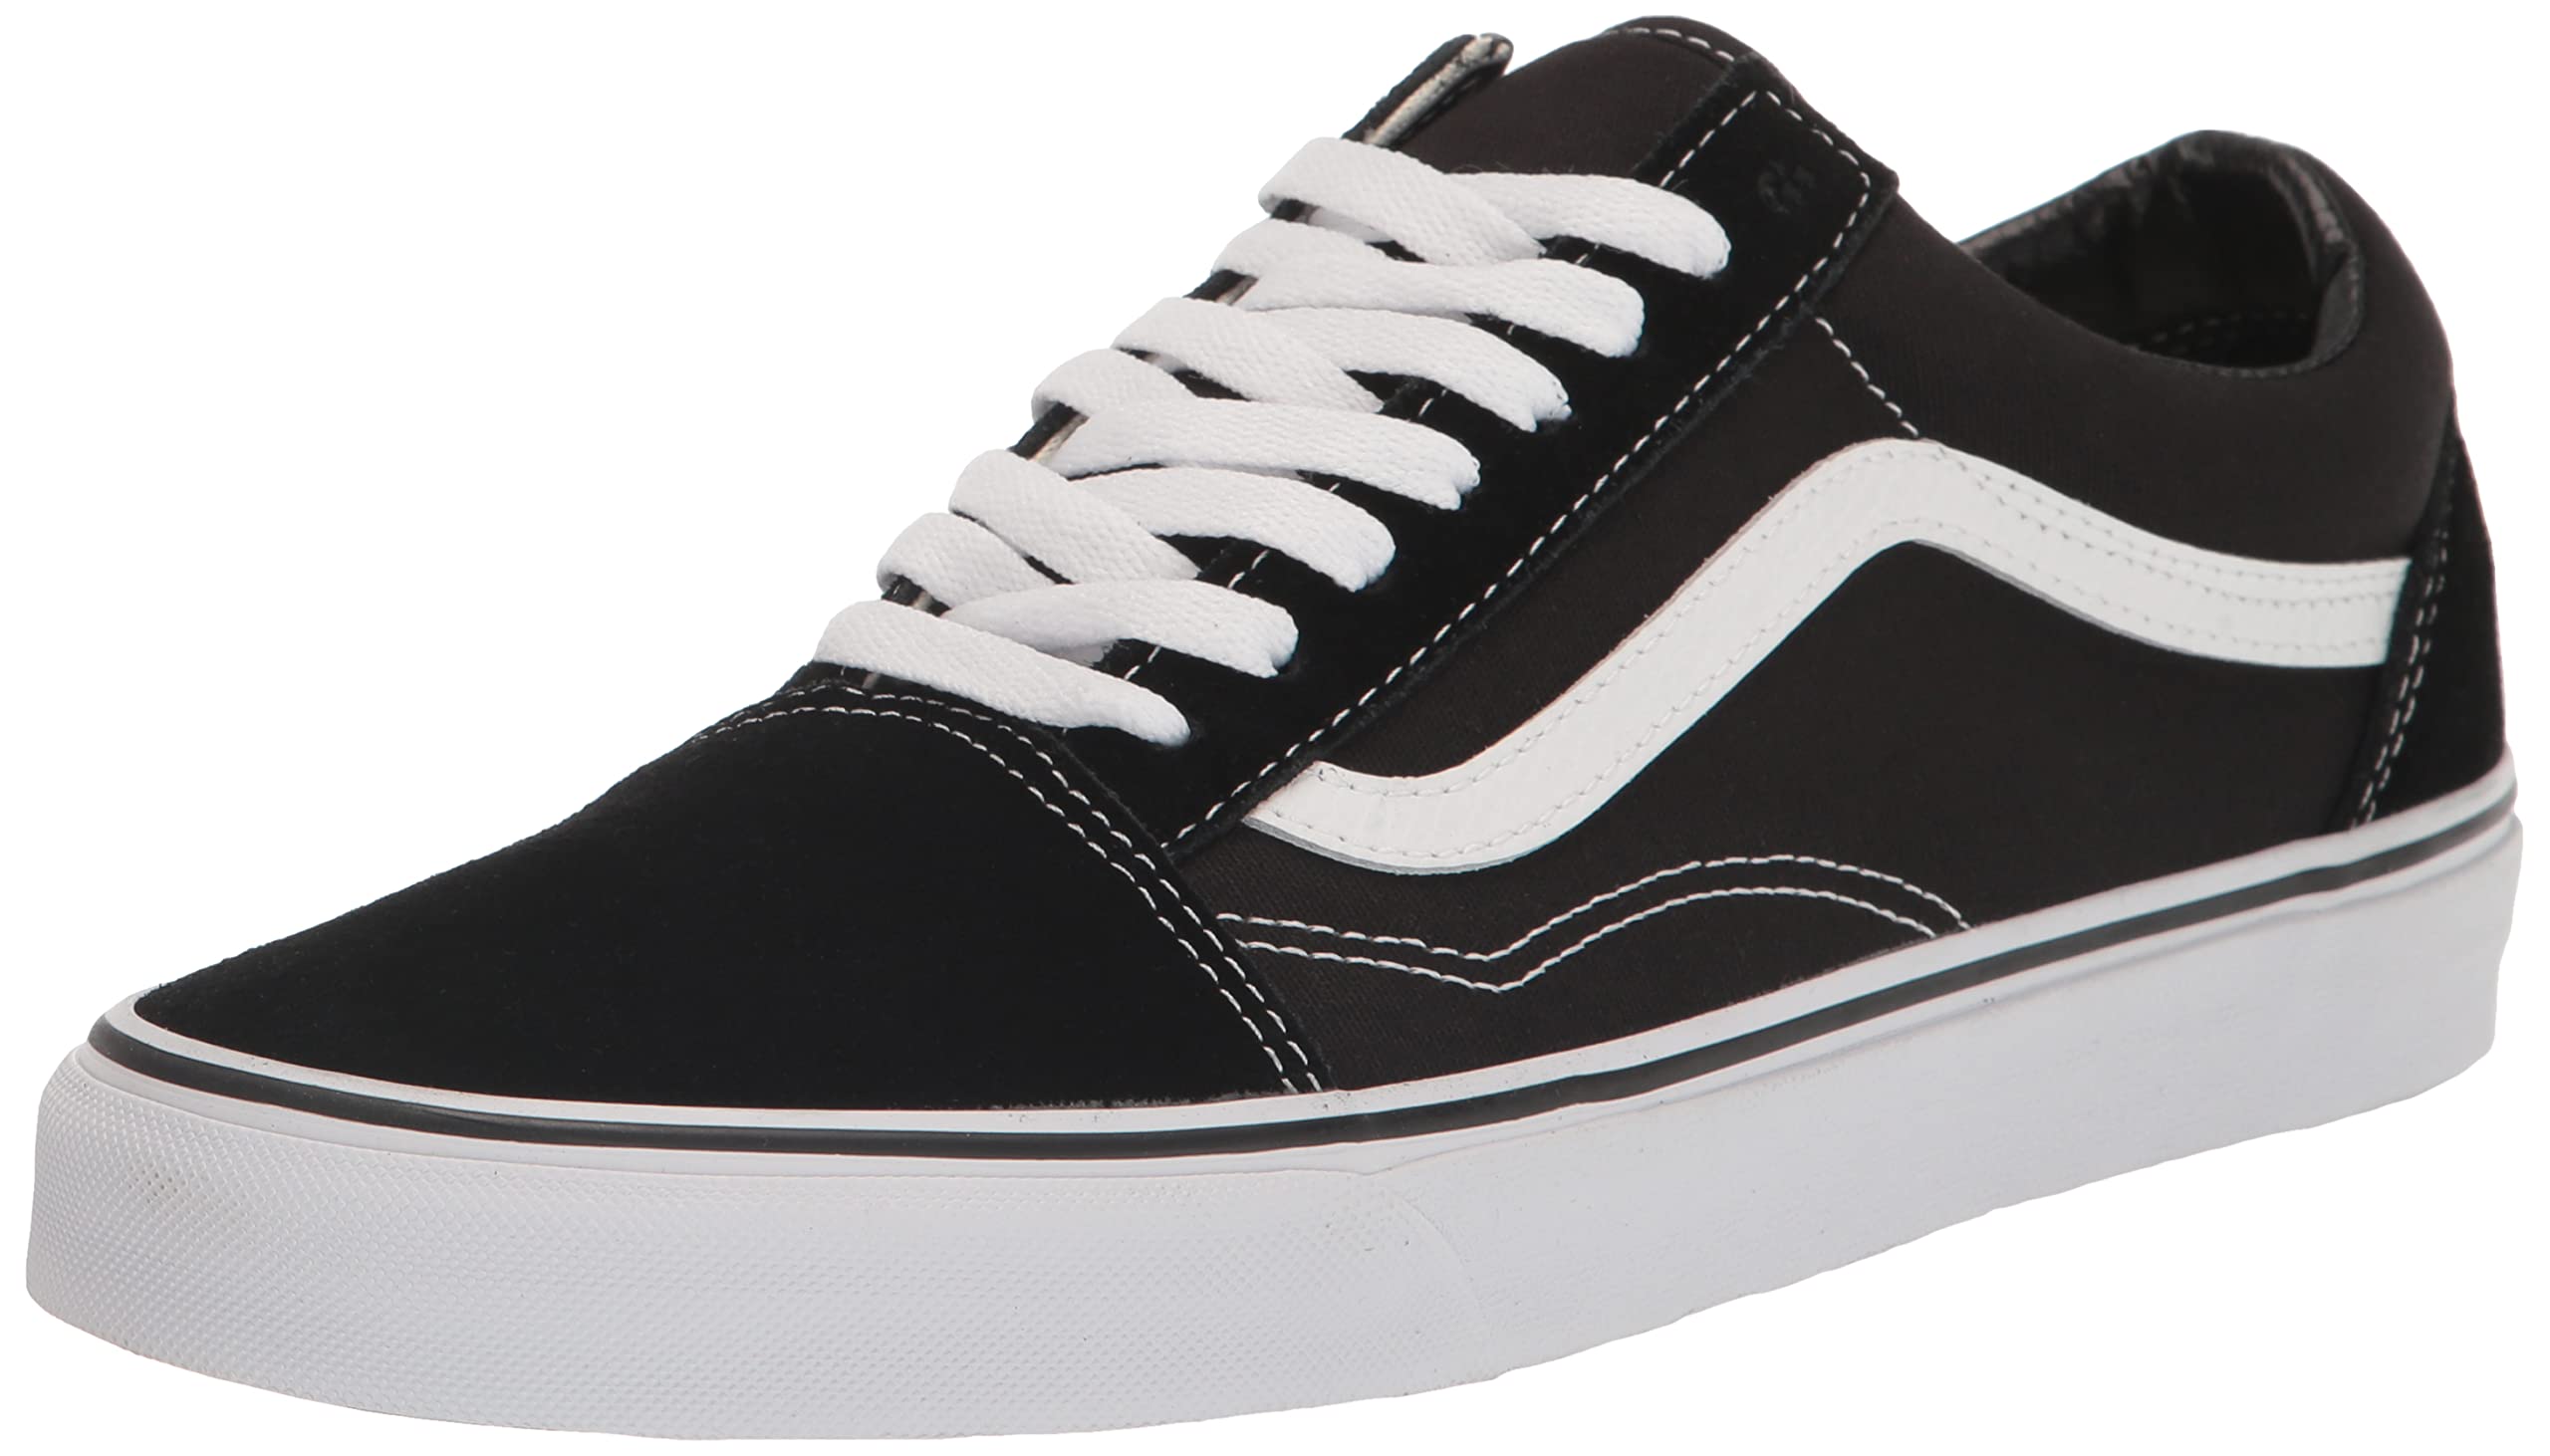 Mua Vans Unisex Old Skool Classic Skate Shoes trên Amazon Mỹ chính hãng ...